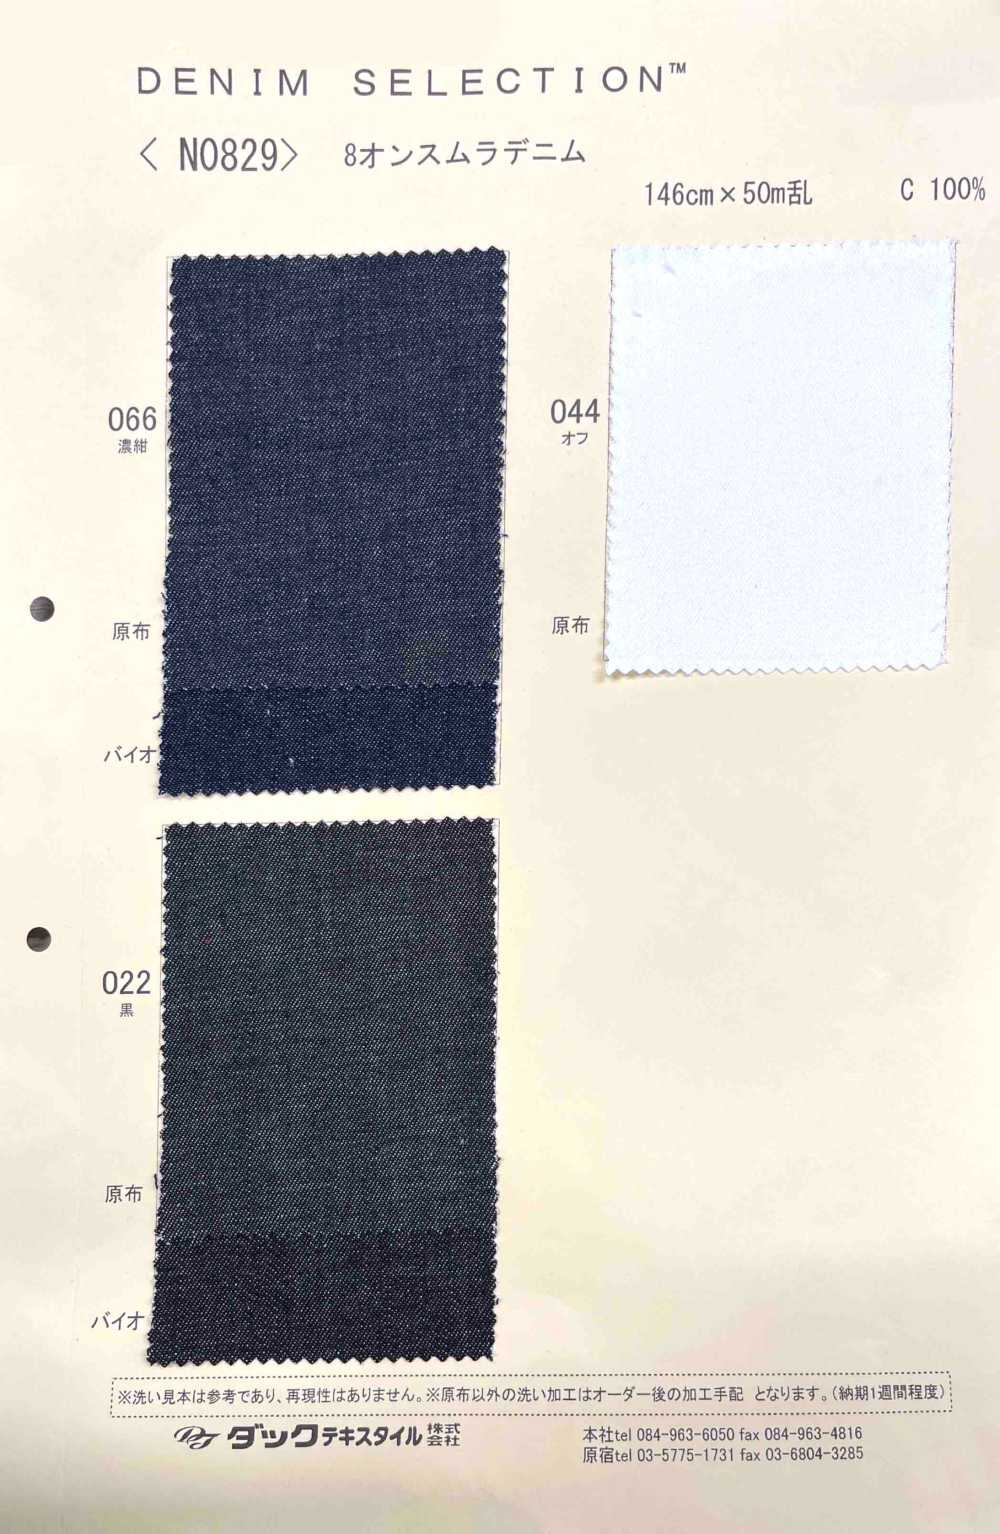 N0829 Mezclilla Desigual De 8 Oz[Fabrica Textil] DUCK TEXTILE